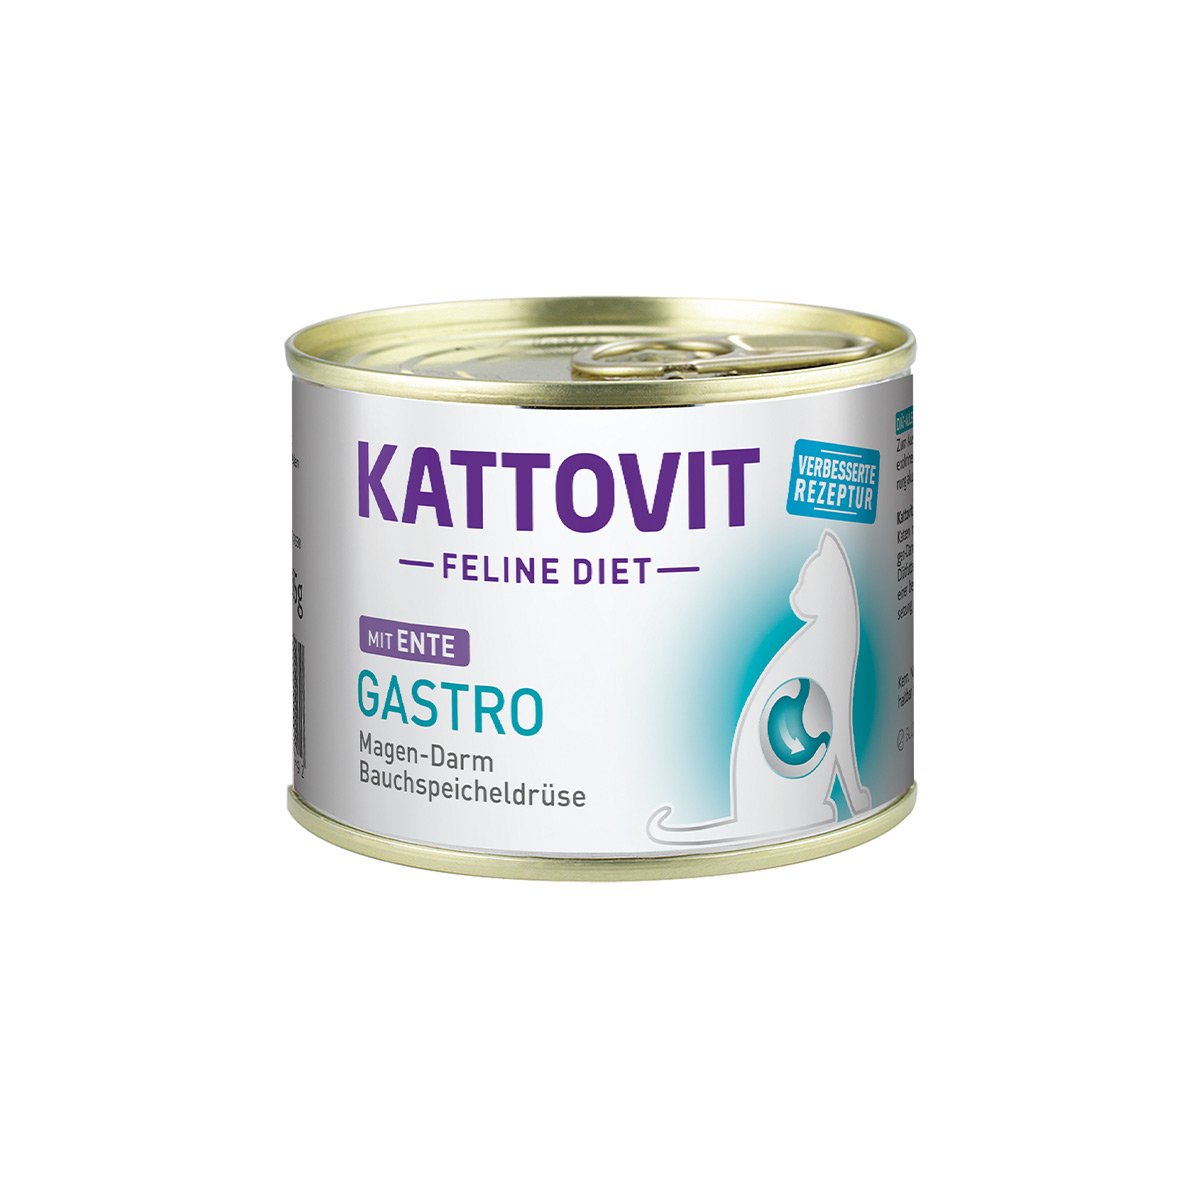 Kattovit Feline Diet Gastro Ente 12x185g von Kattovit